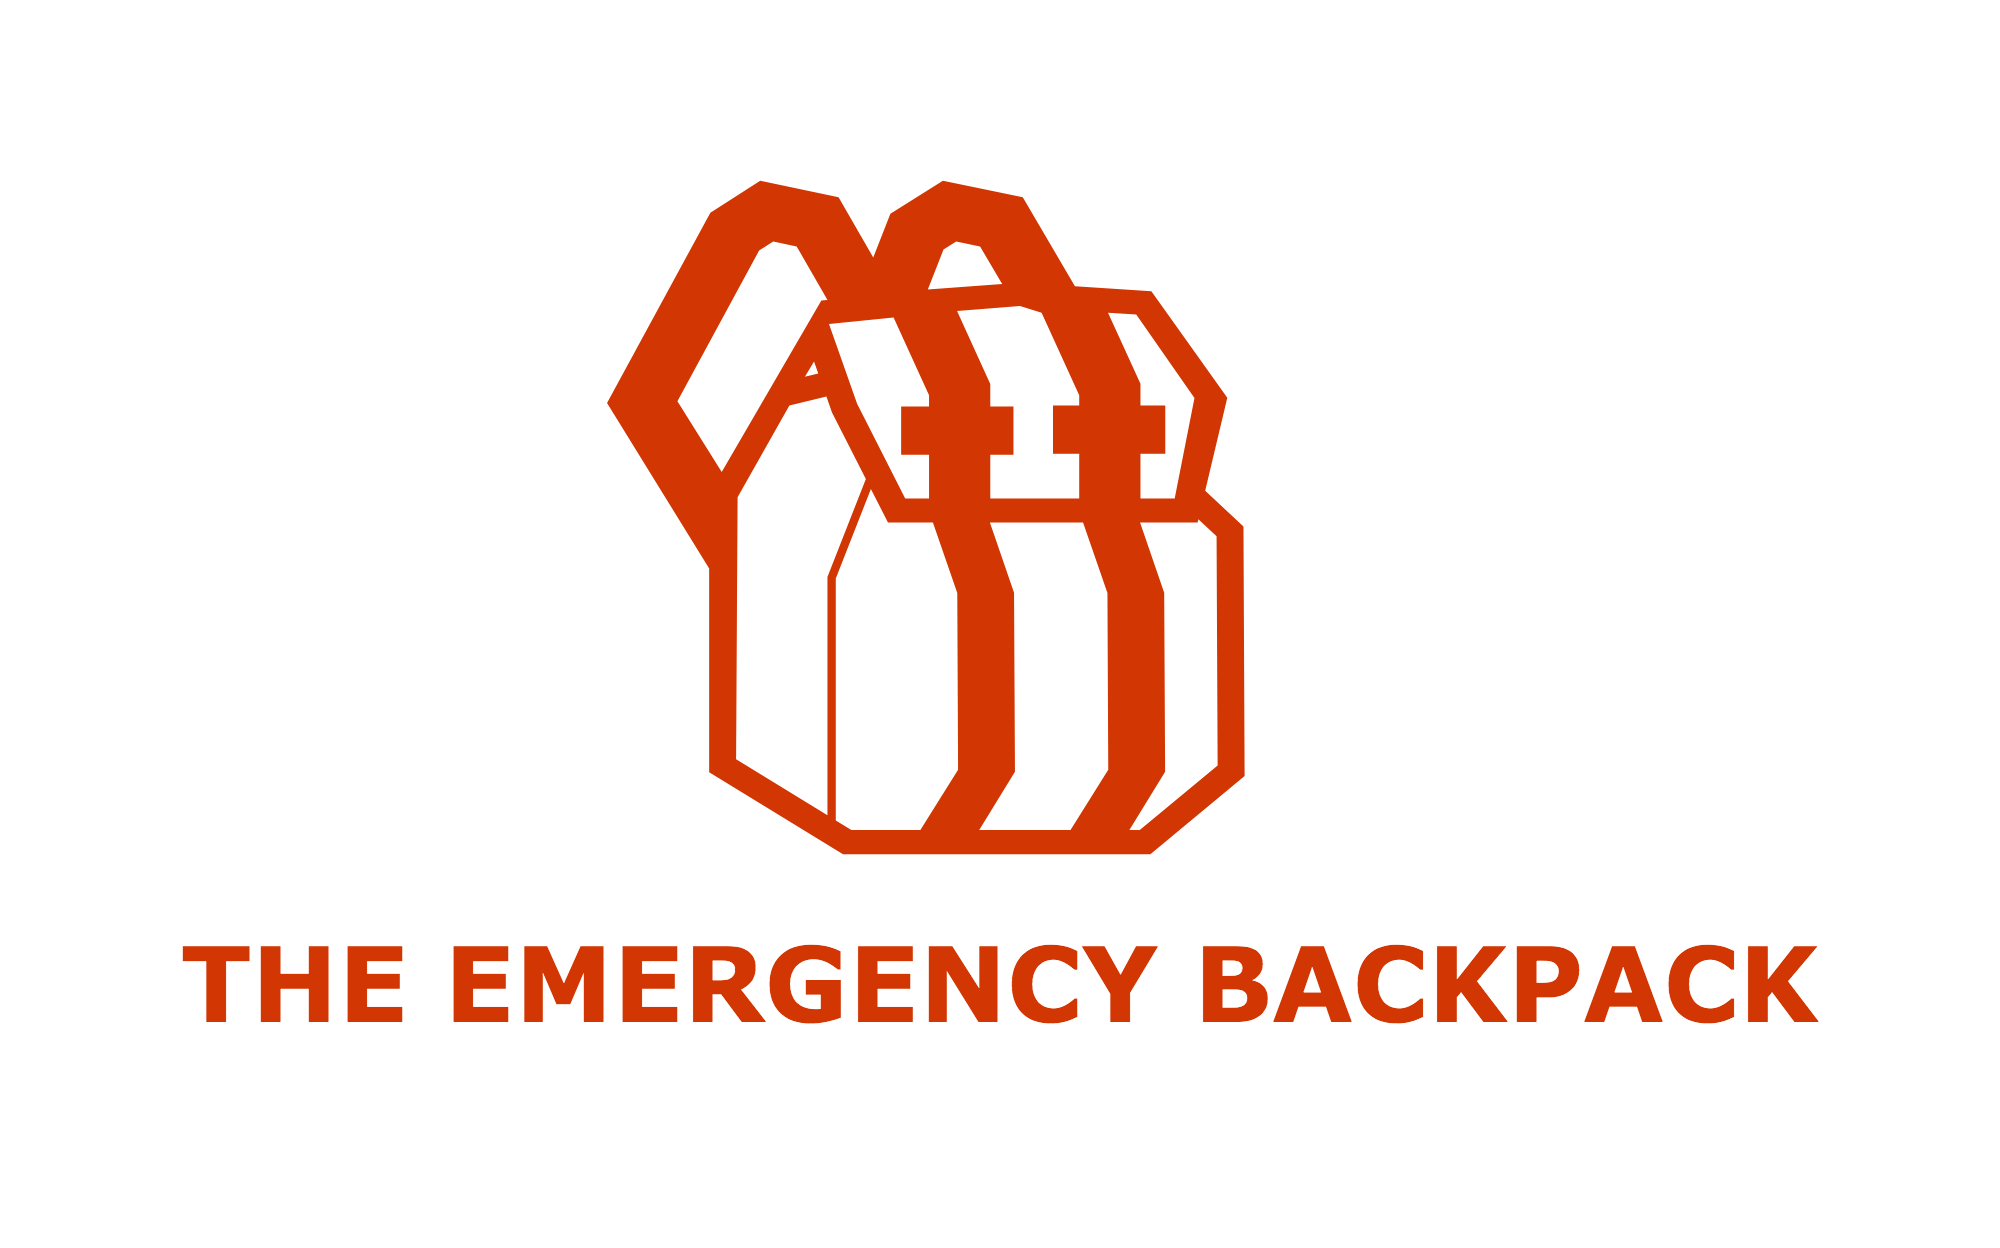 THE EMERGENCY BACKPACK